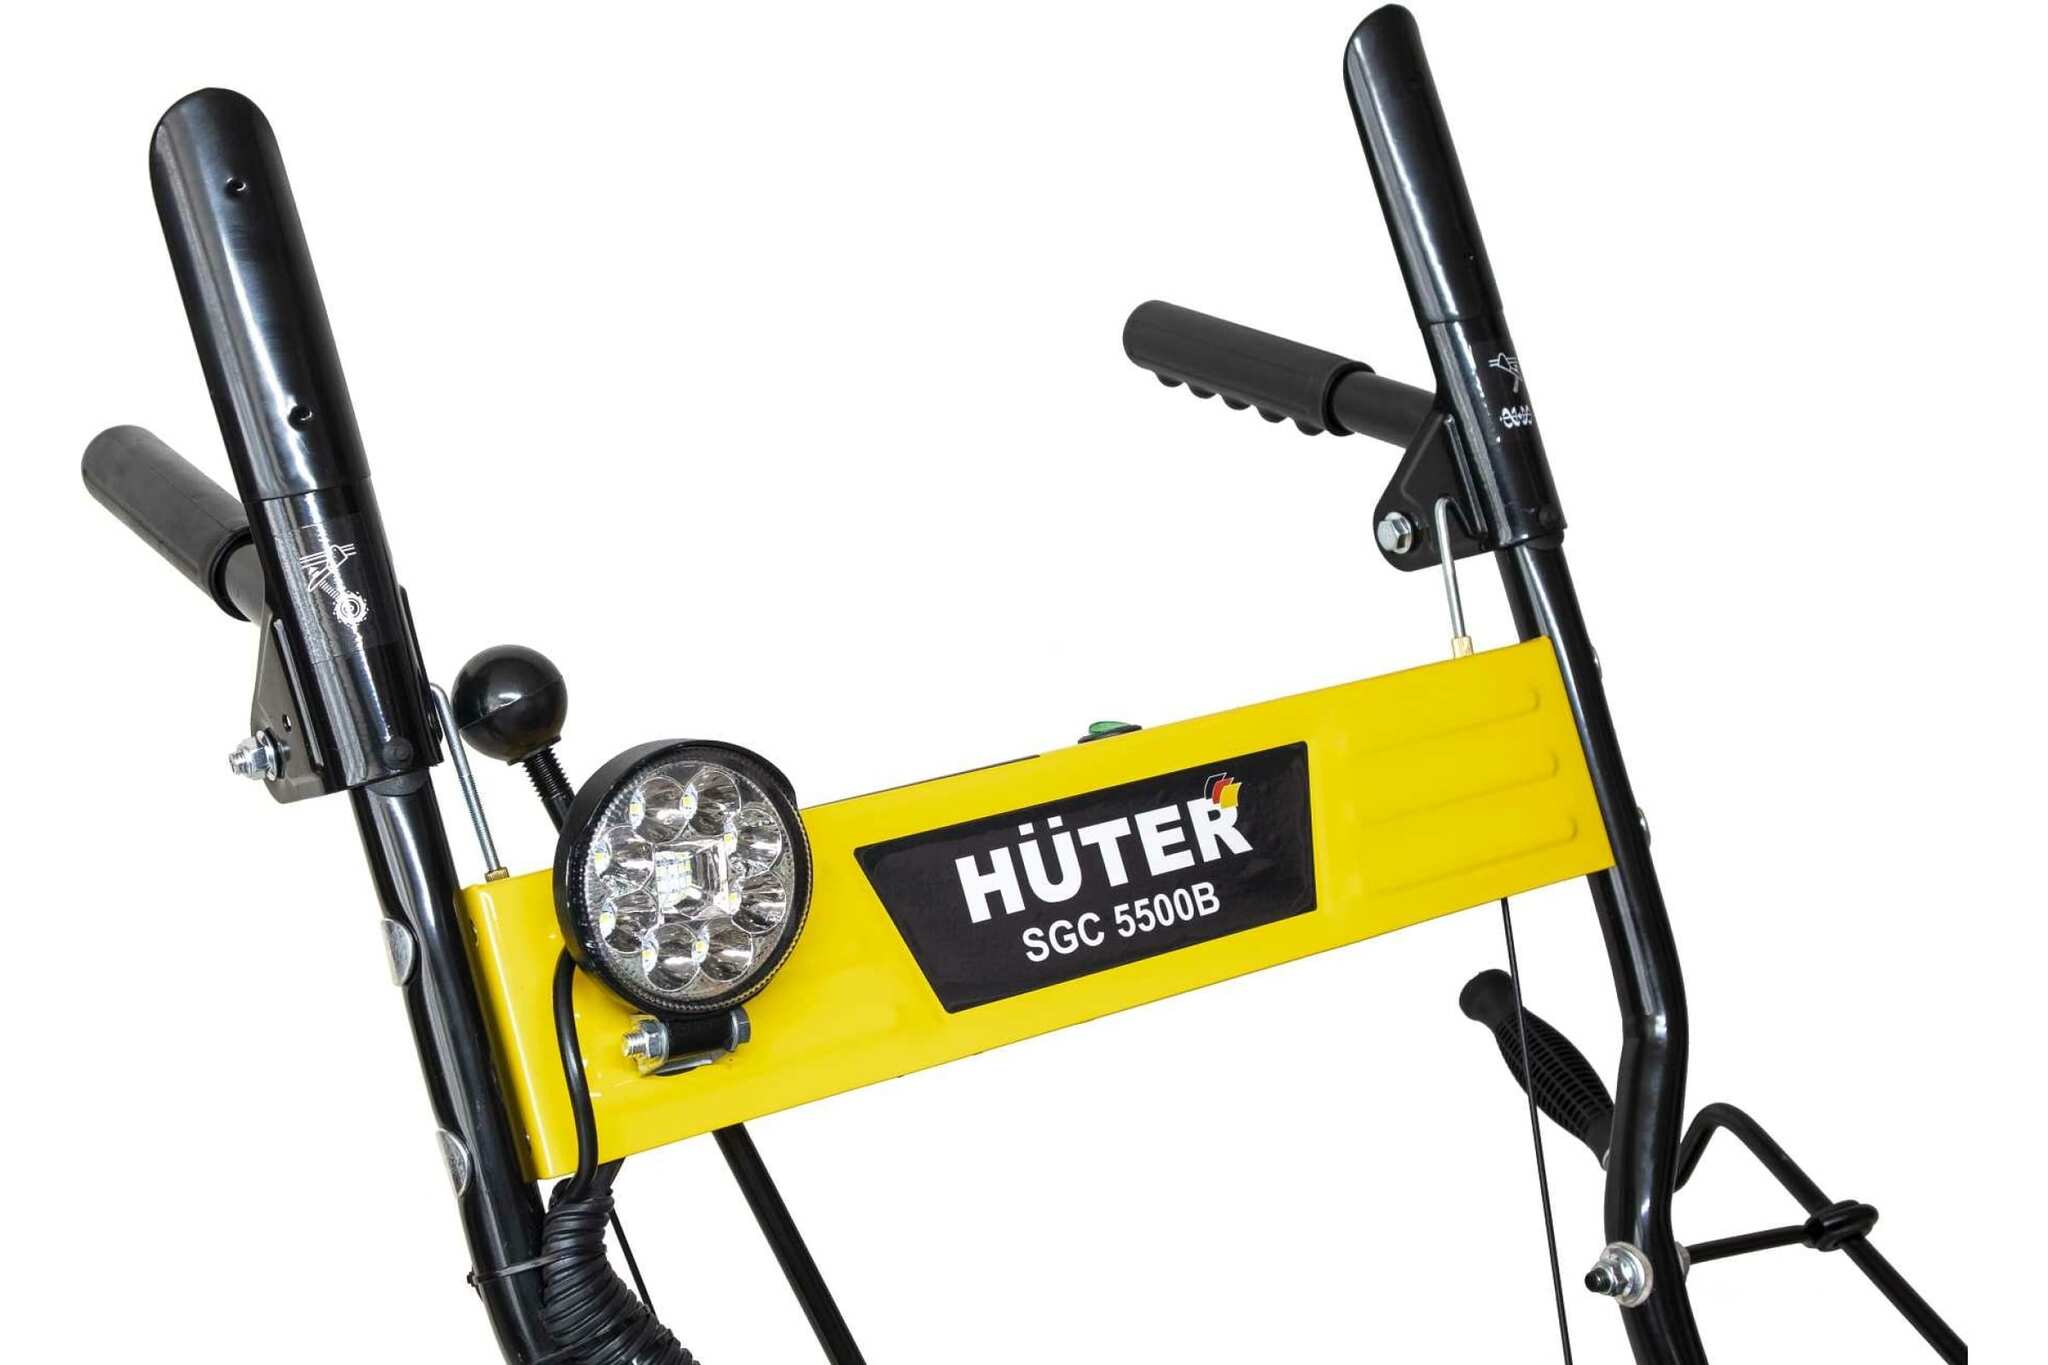  Huter SGC 5500B -  по низкой цене с доставкой .